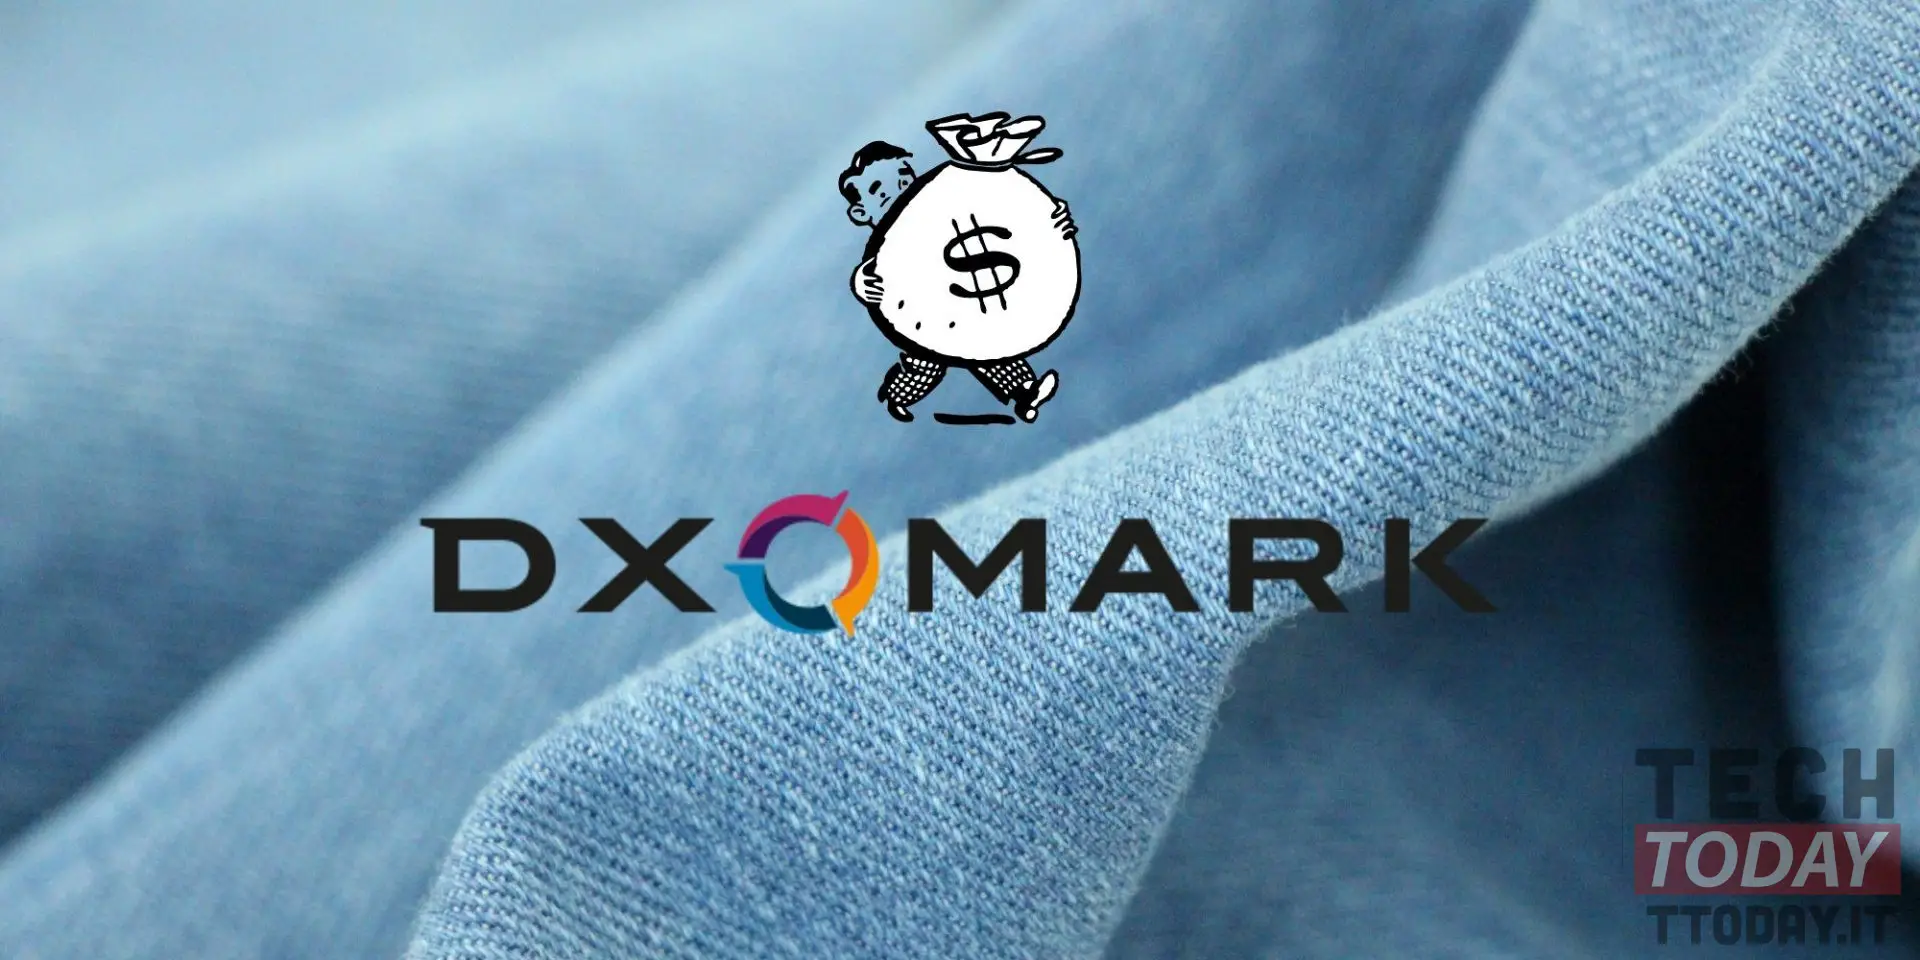 dxomark steigt in die Segmentierung und Preisgestaltung von Smartphones ein